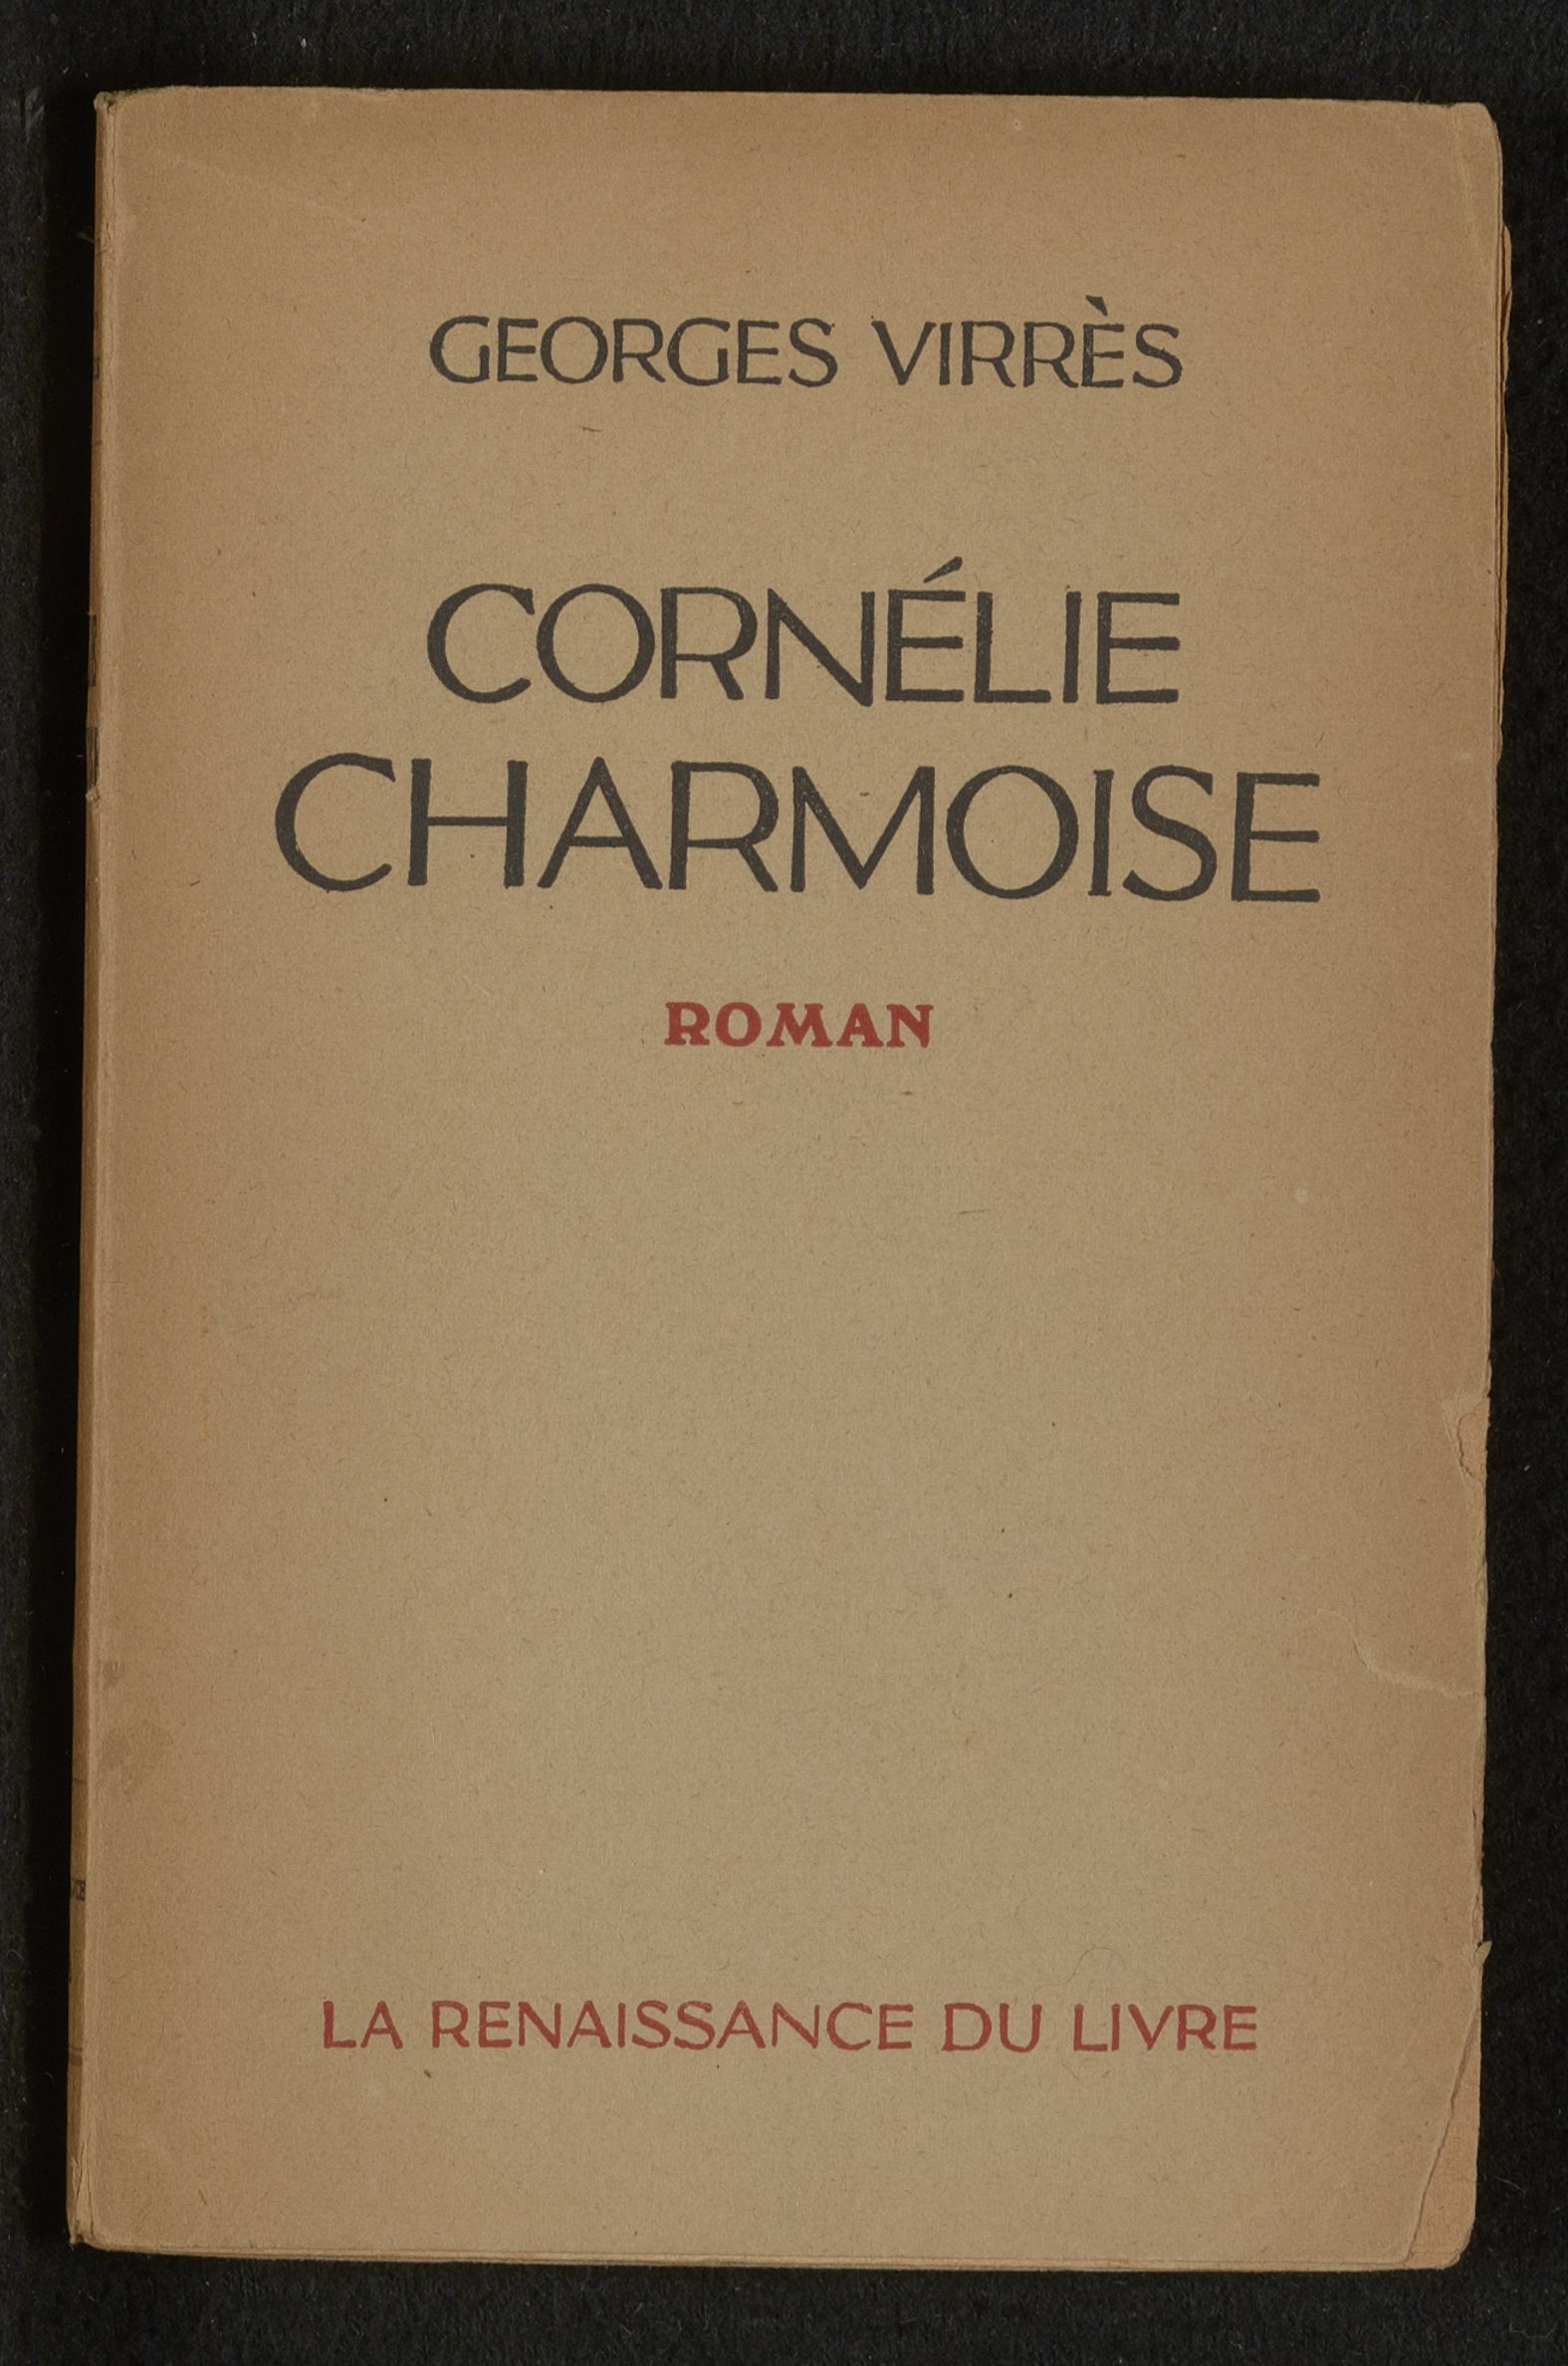 Cornélie Charmoise